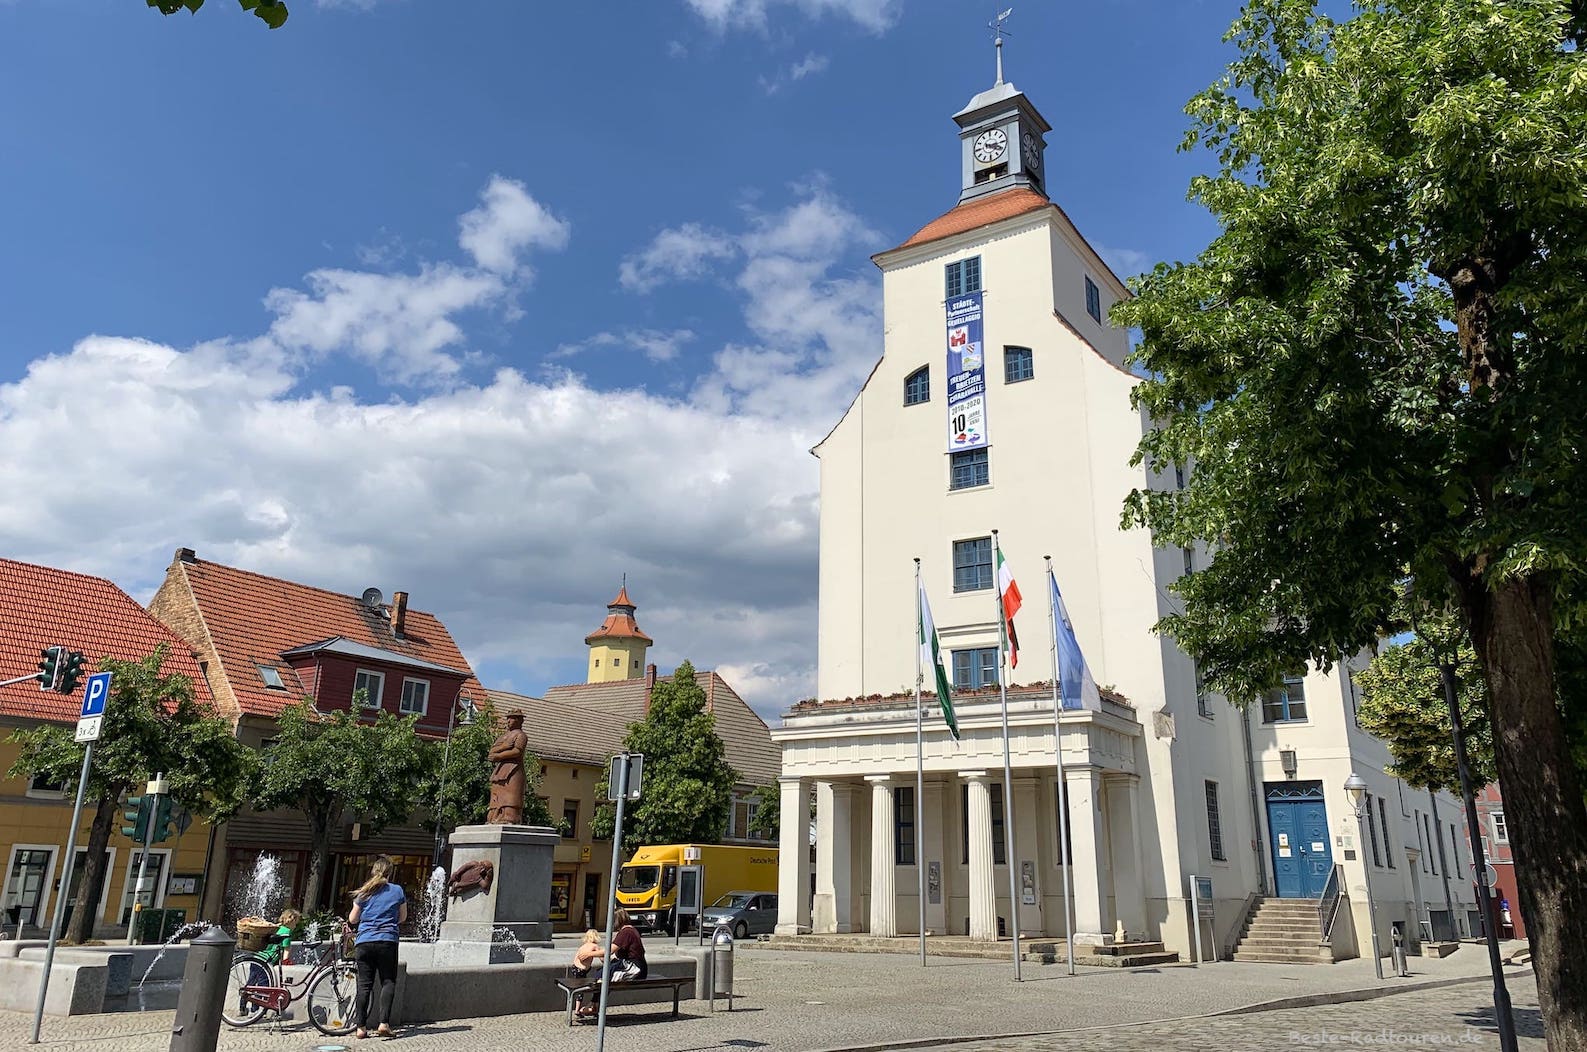 Auf dem Marktplatz von Treuenbrietzen: Vor dem Rathaus steht das Sabinchen-Denkmal (Sabinchen-Brunnen)